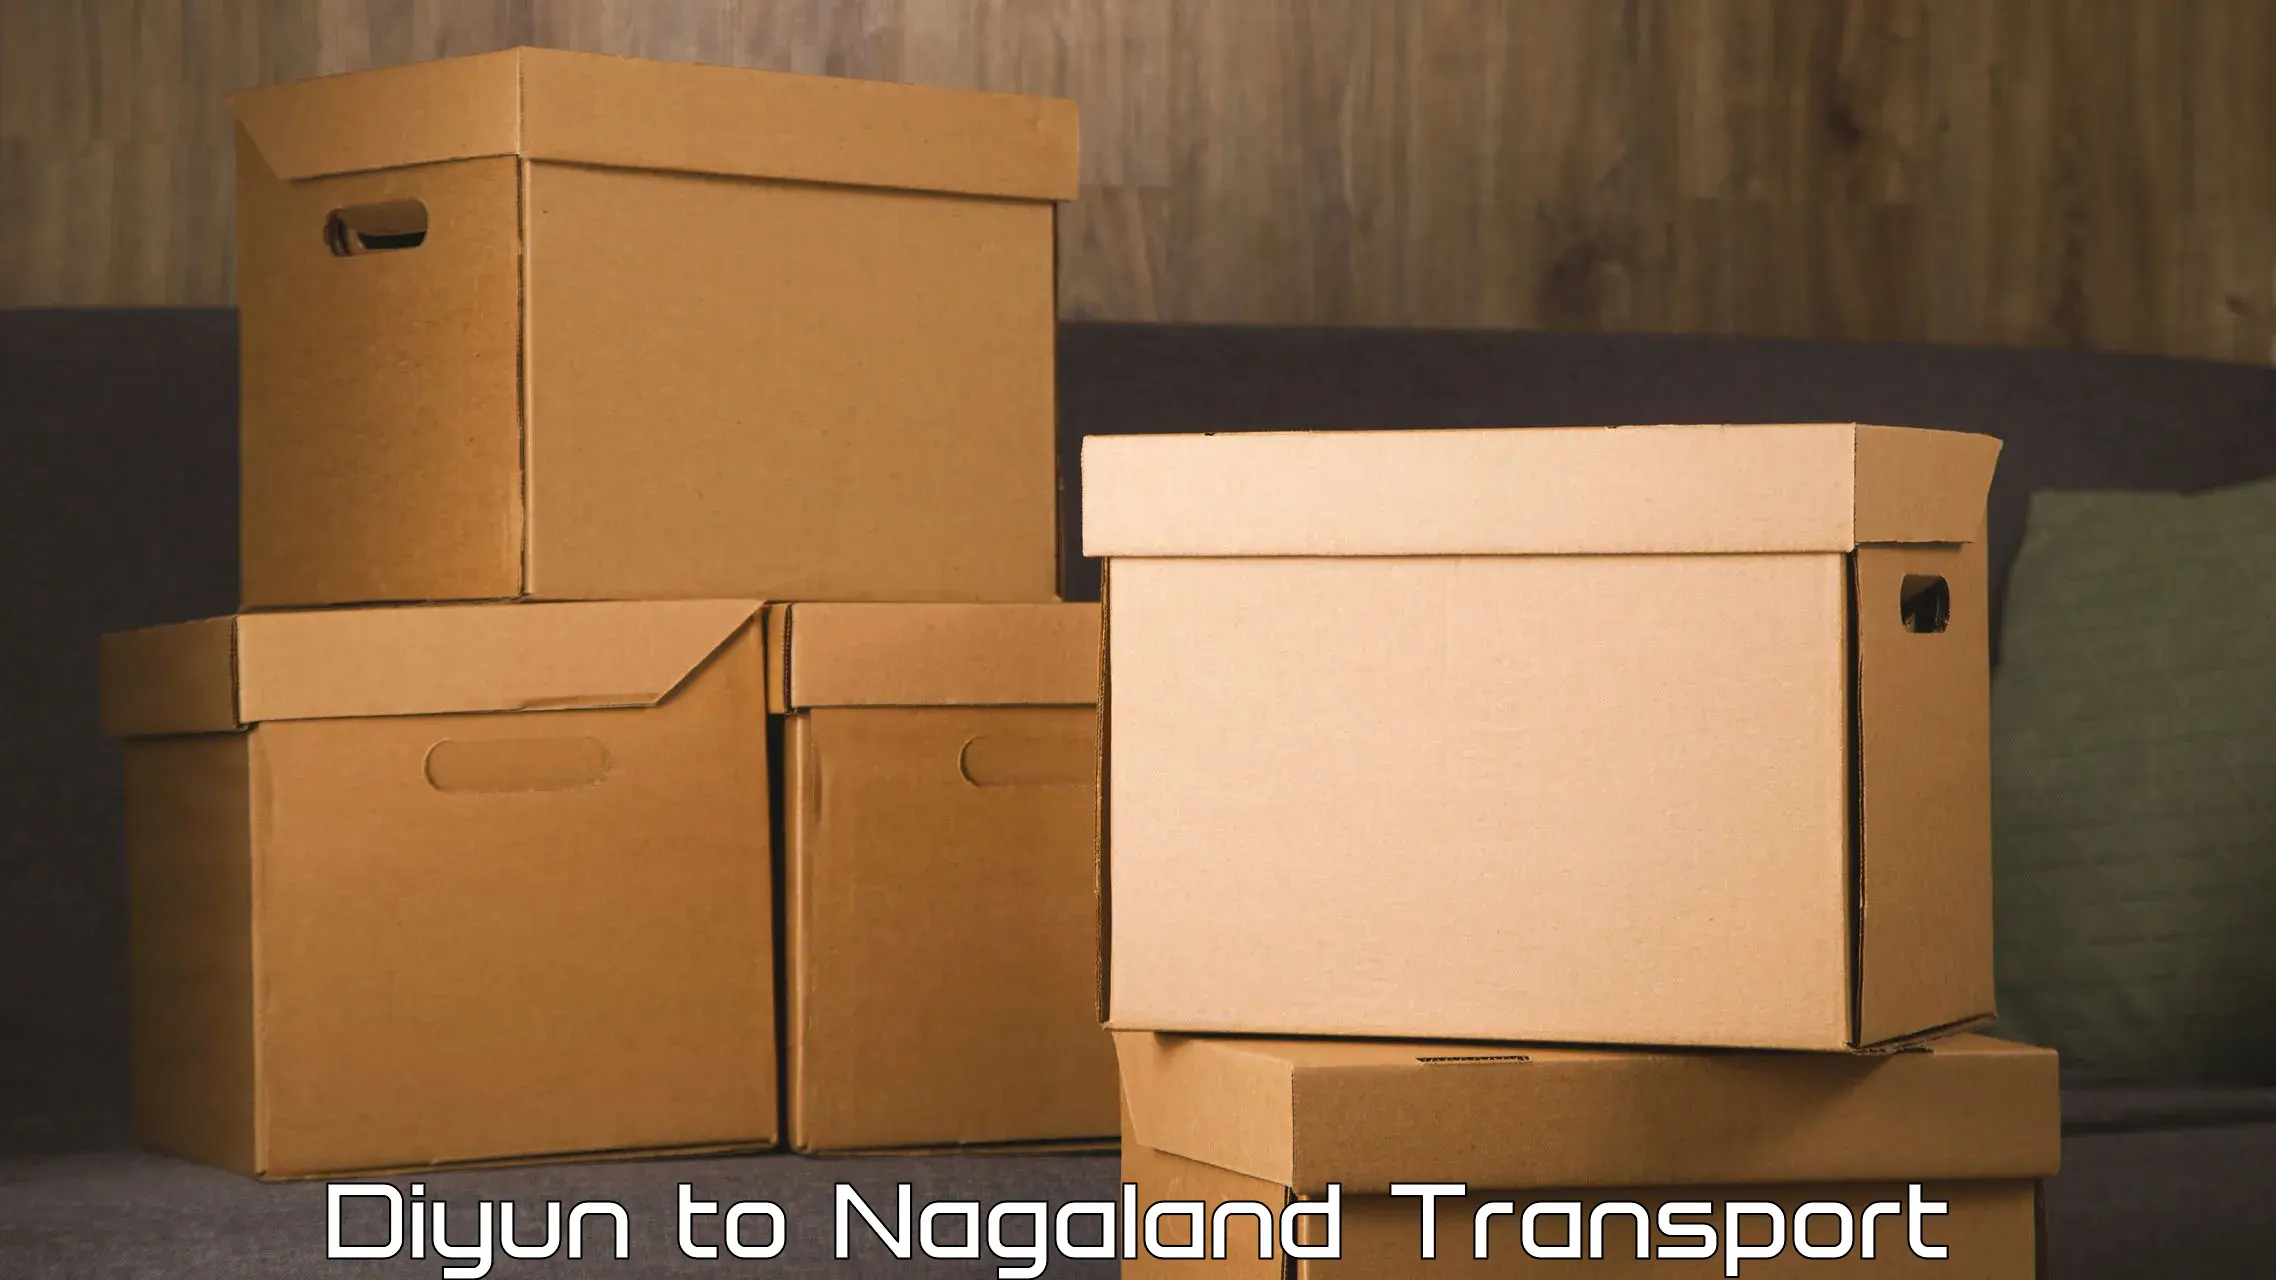 Lorry transport service Diyun to NIT Nagaland